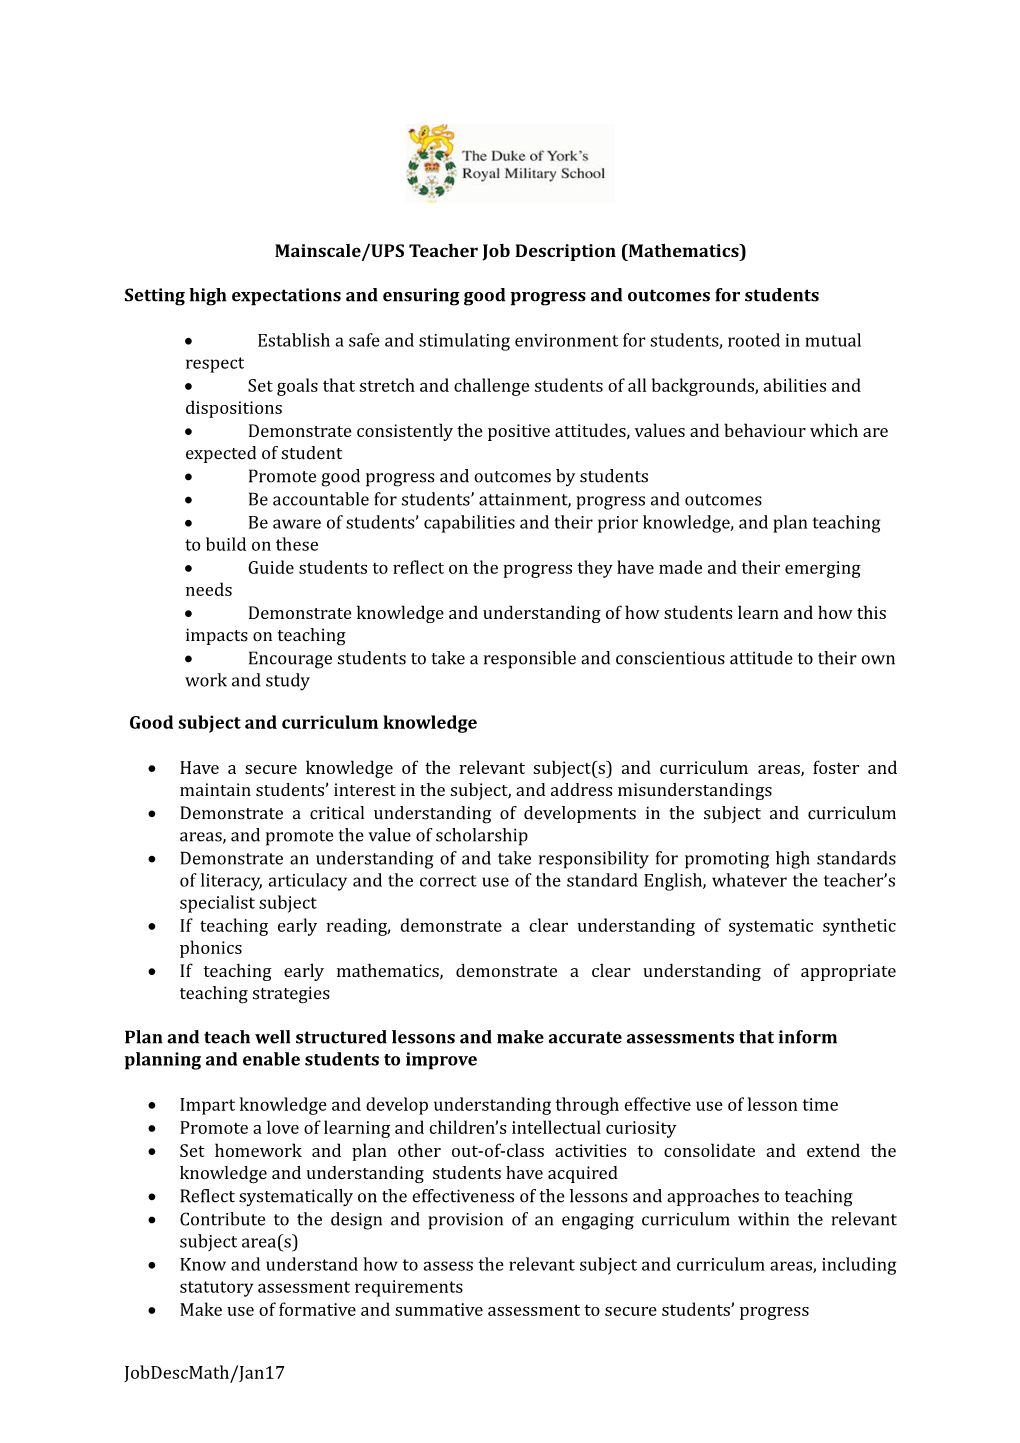 Mainscale/UPS Teacher Job Description (Mathematics)